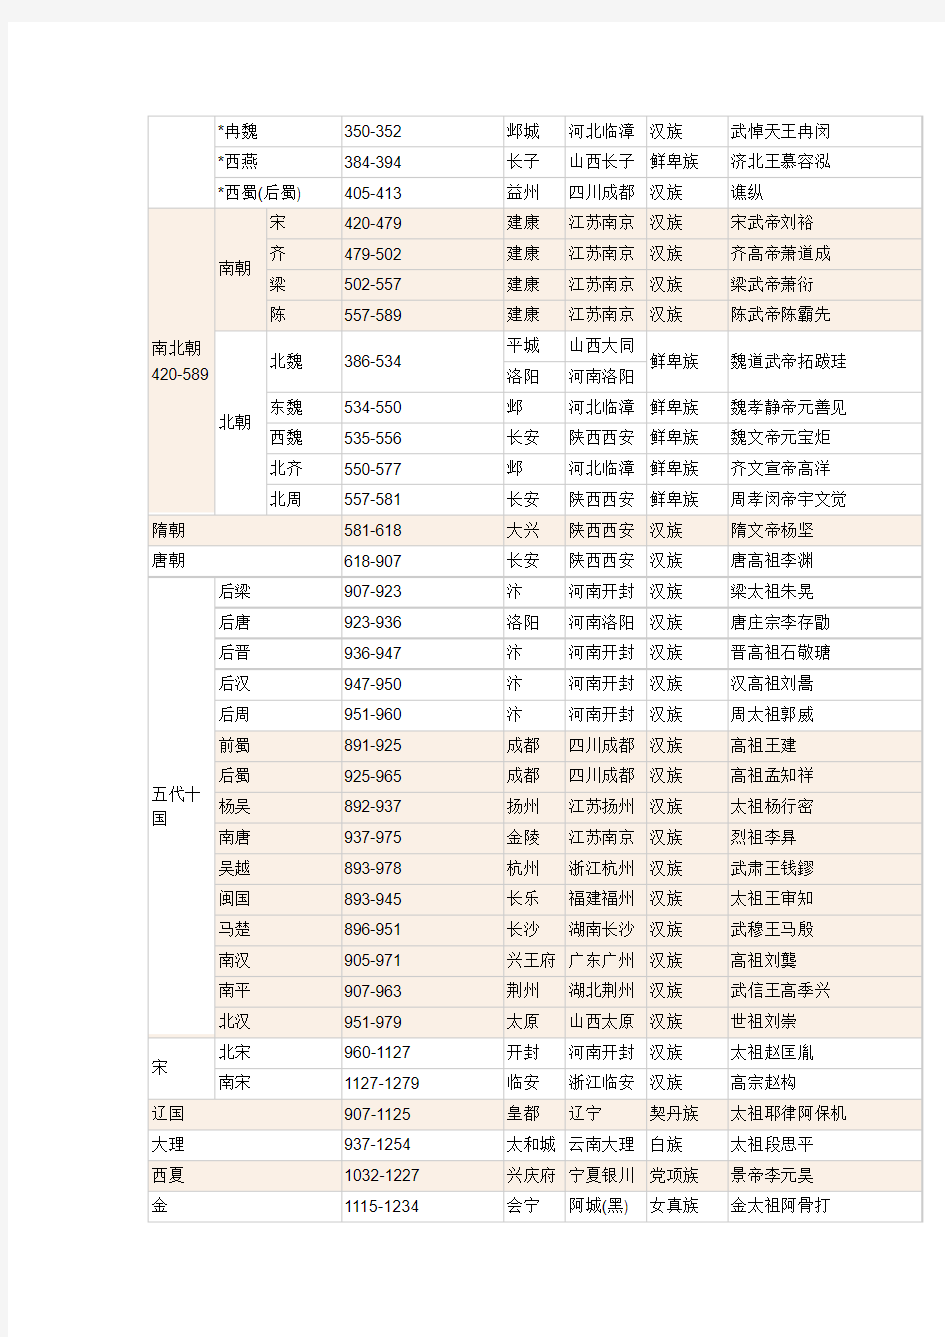 中国历史朝代表-历史朝代顺序表